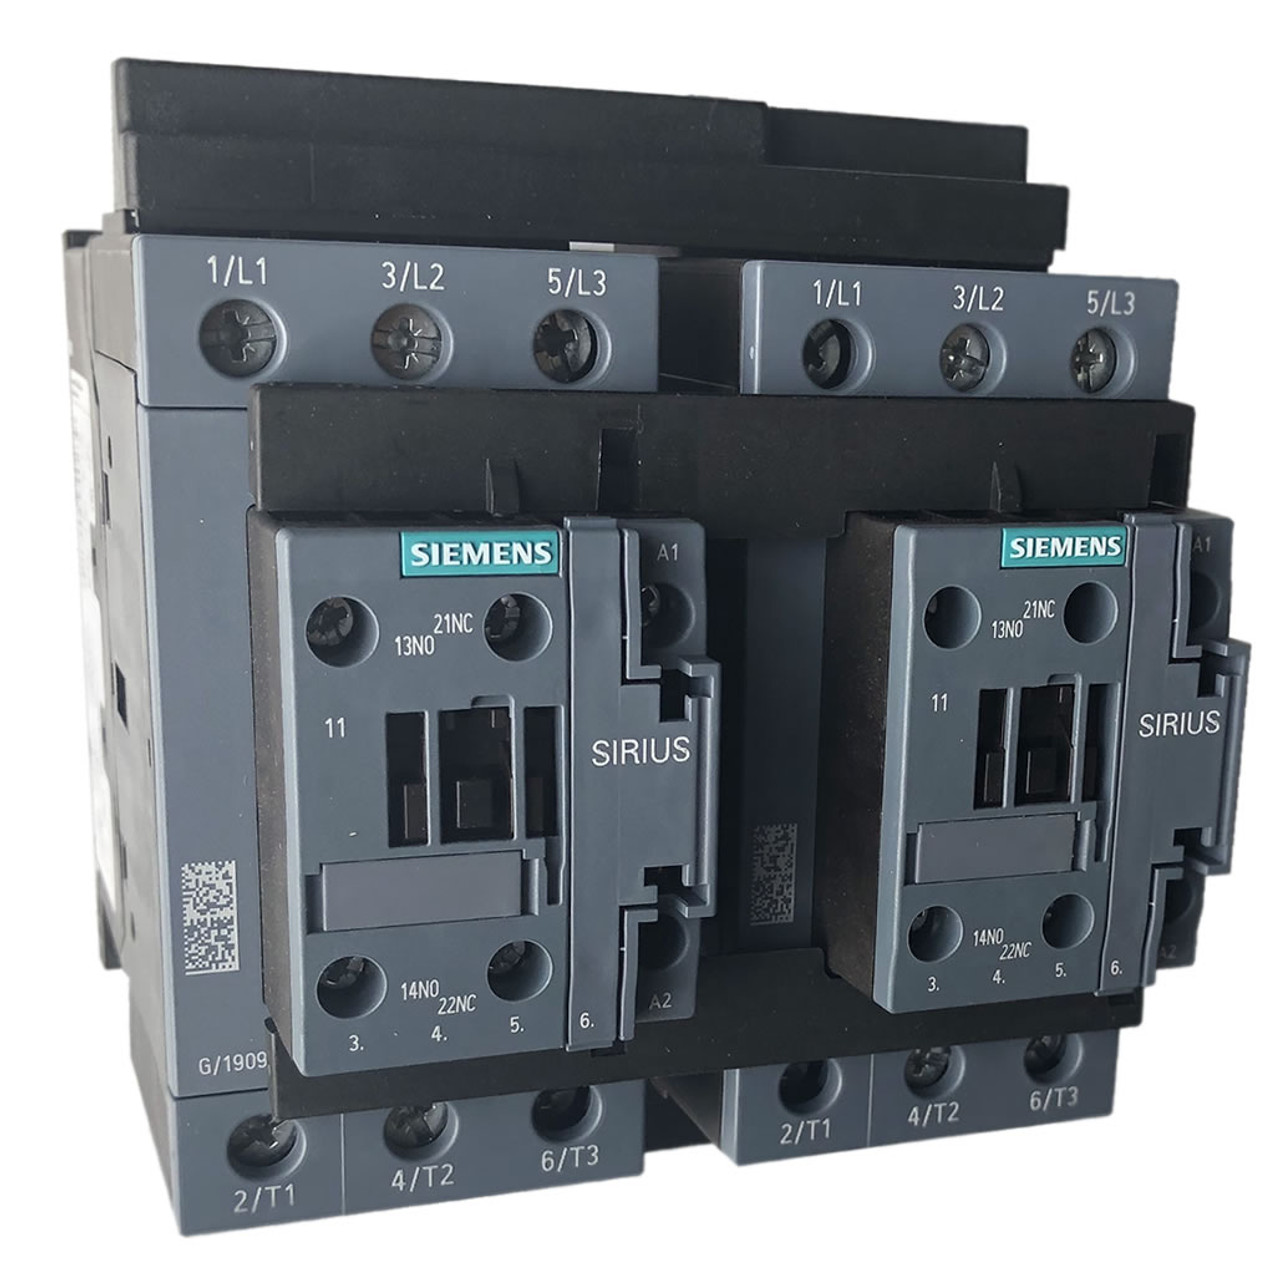 Siemens 3RA2335-8XB30-1AN6 reversing contactor